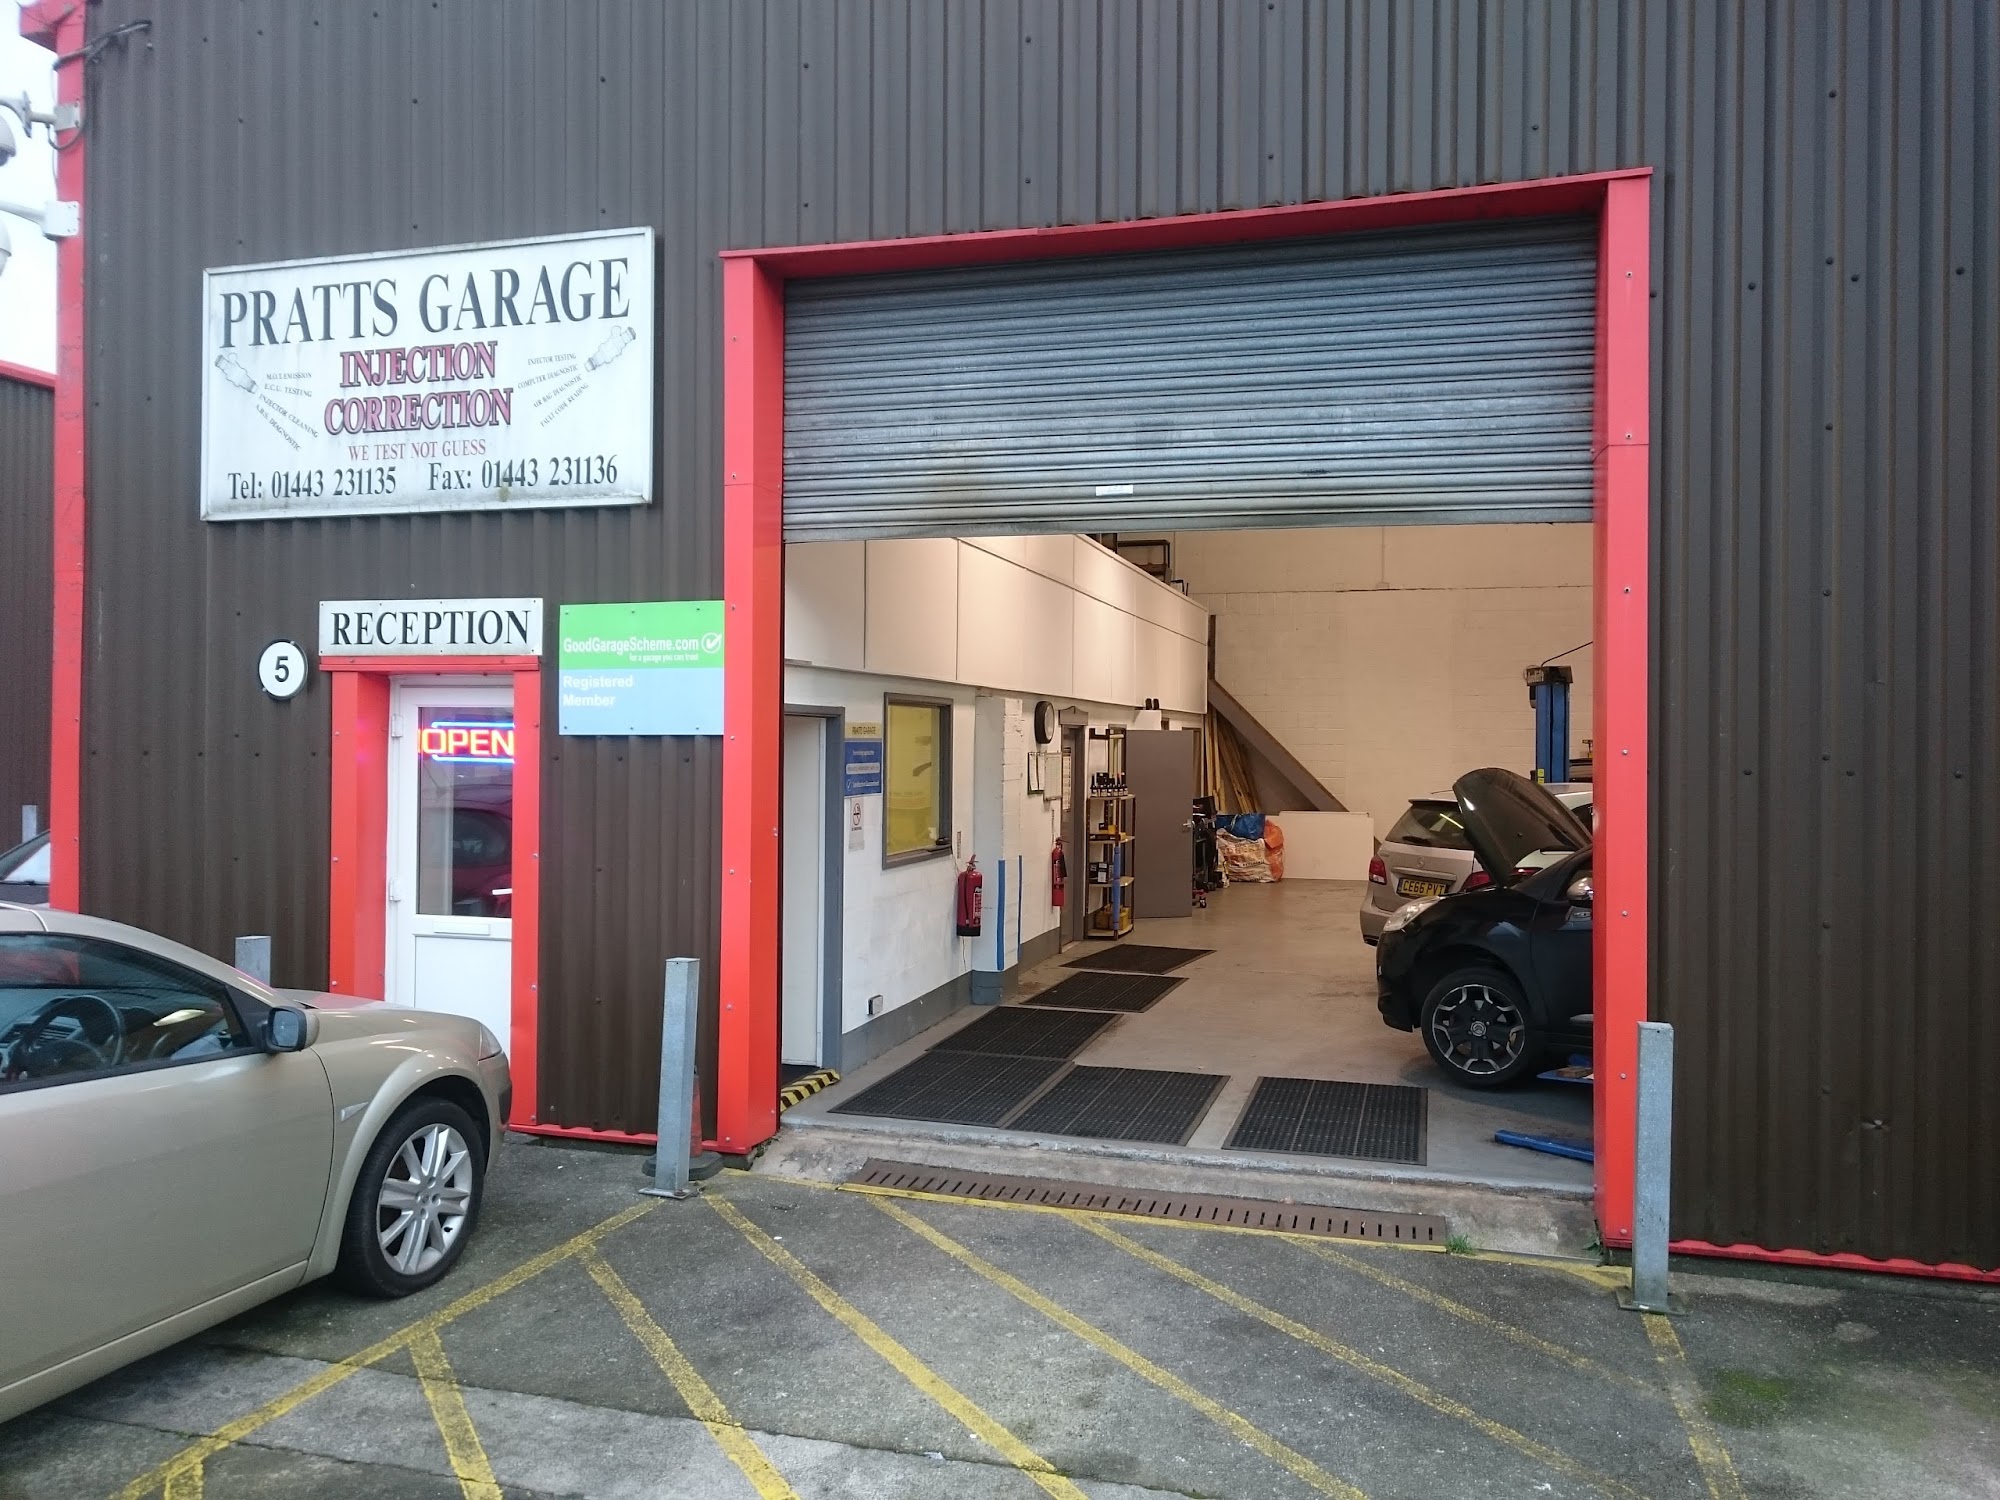 Pratts Garage